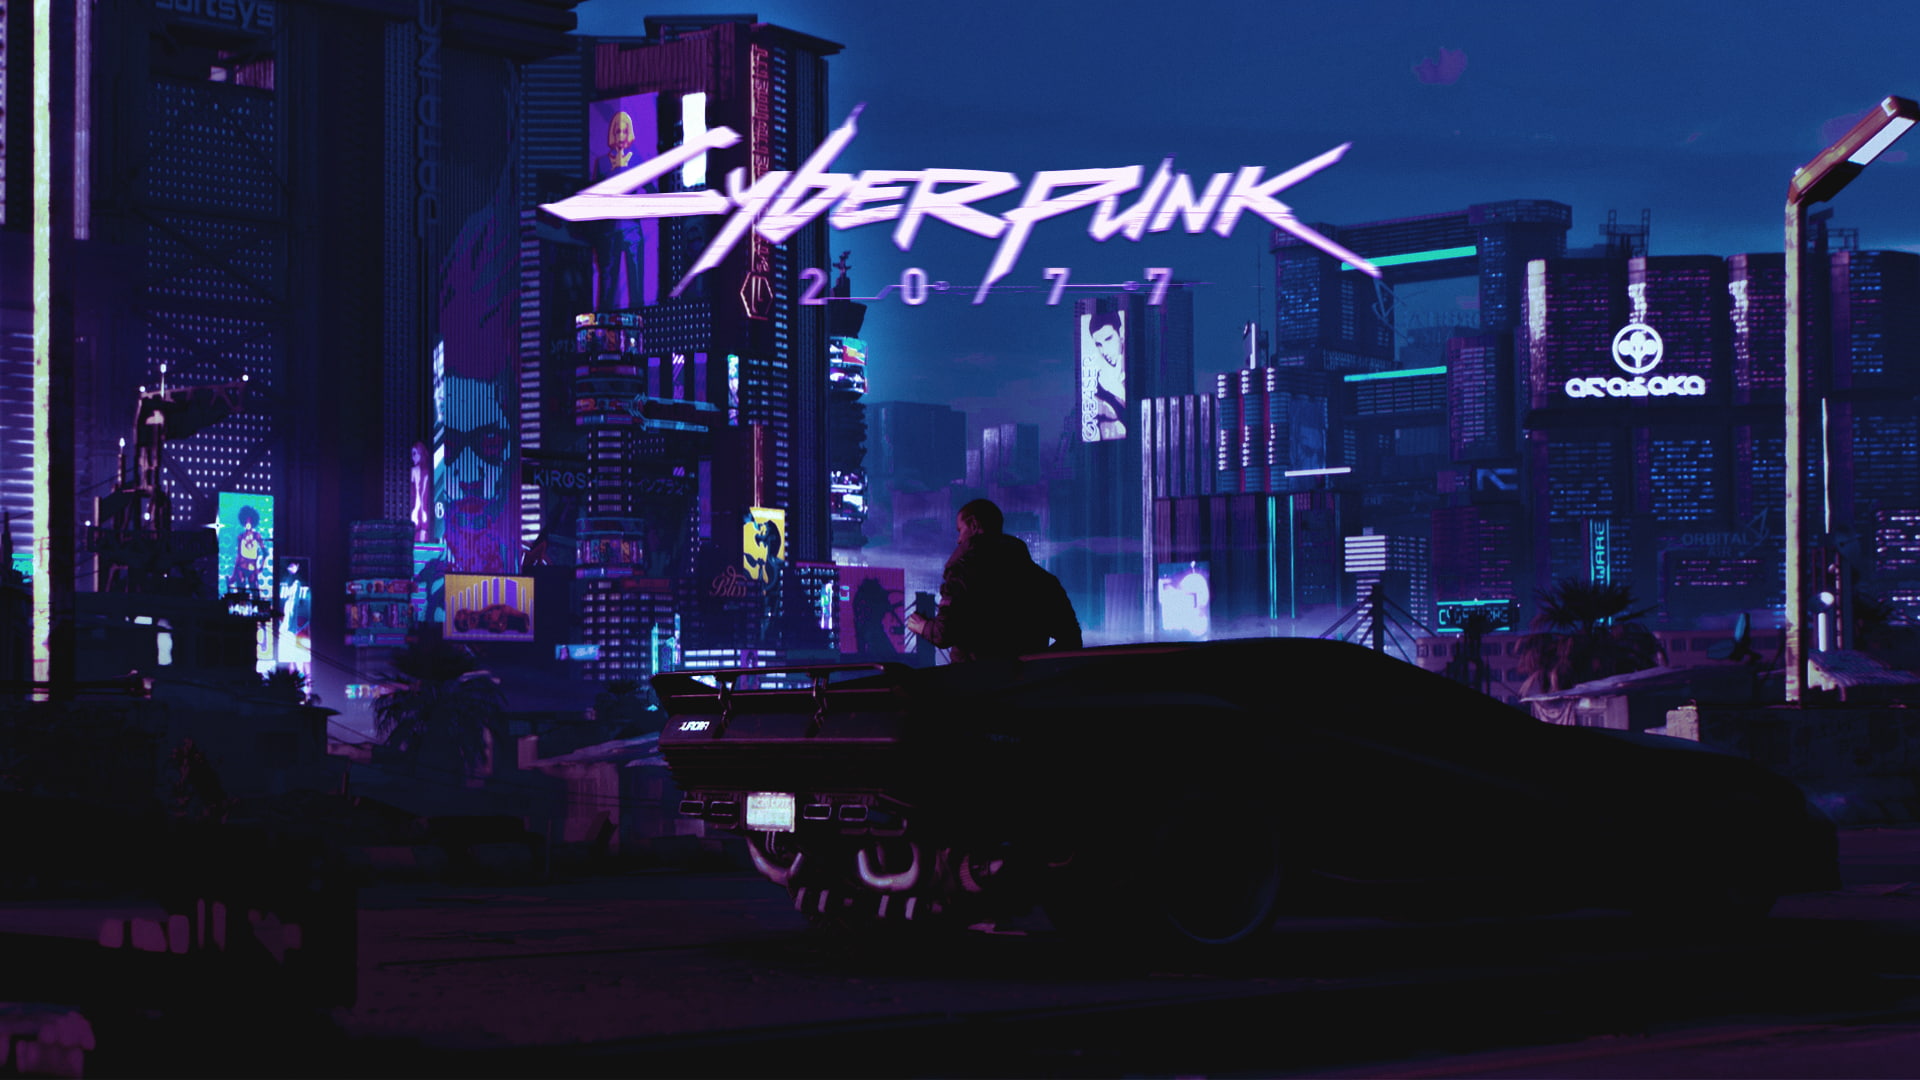 cyberpunk 2077, futuristic, sci-fi, retro, Games